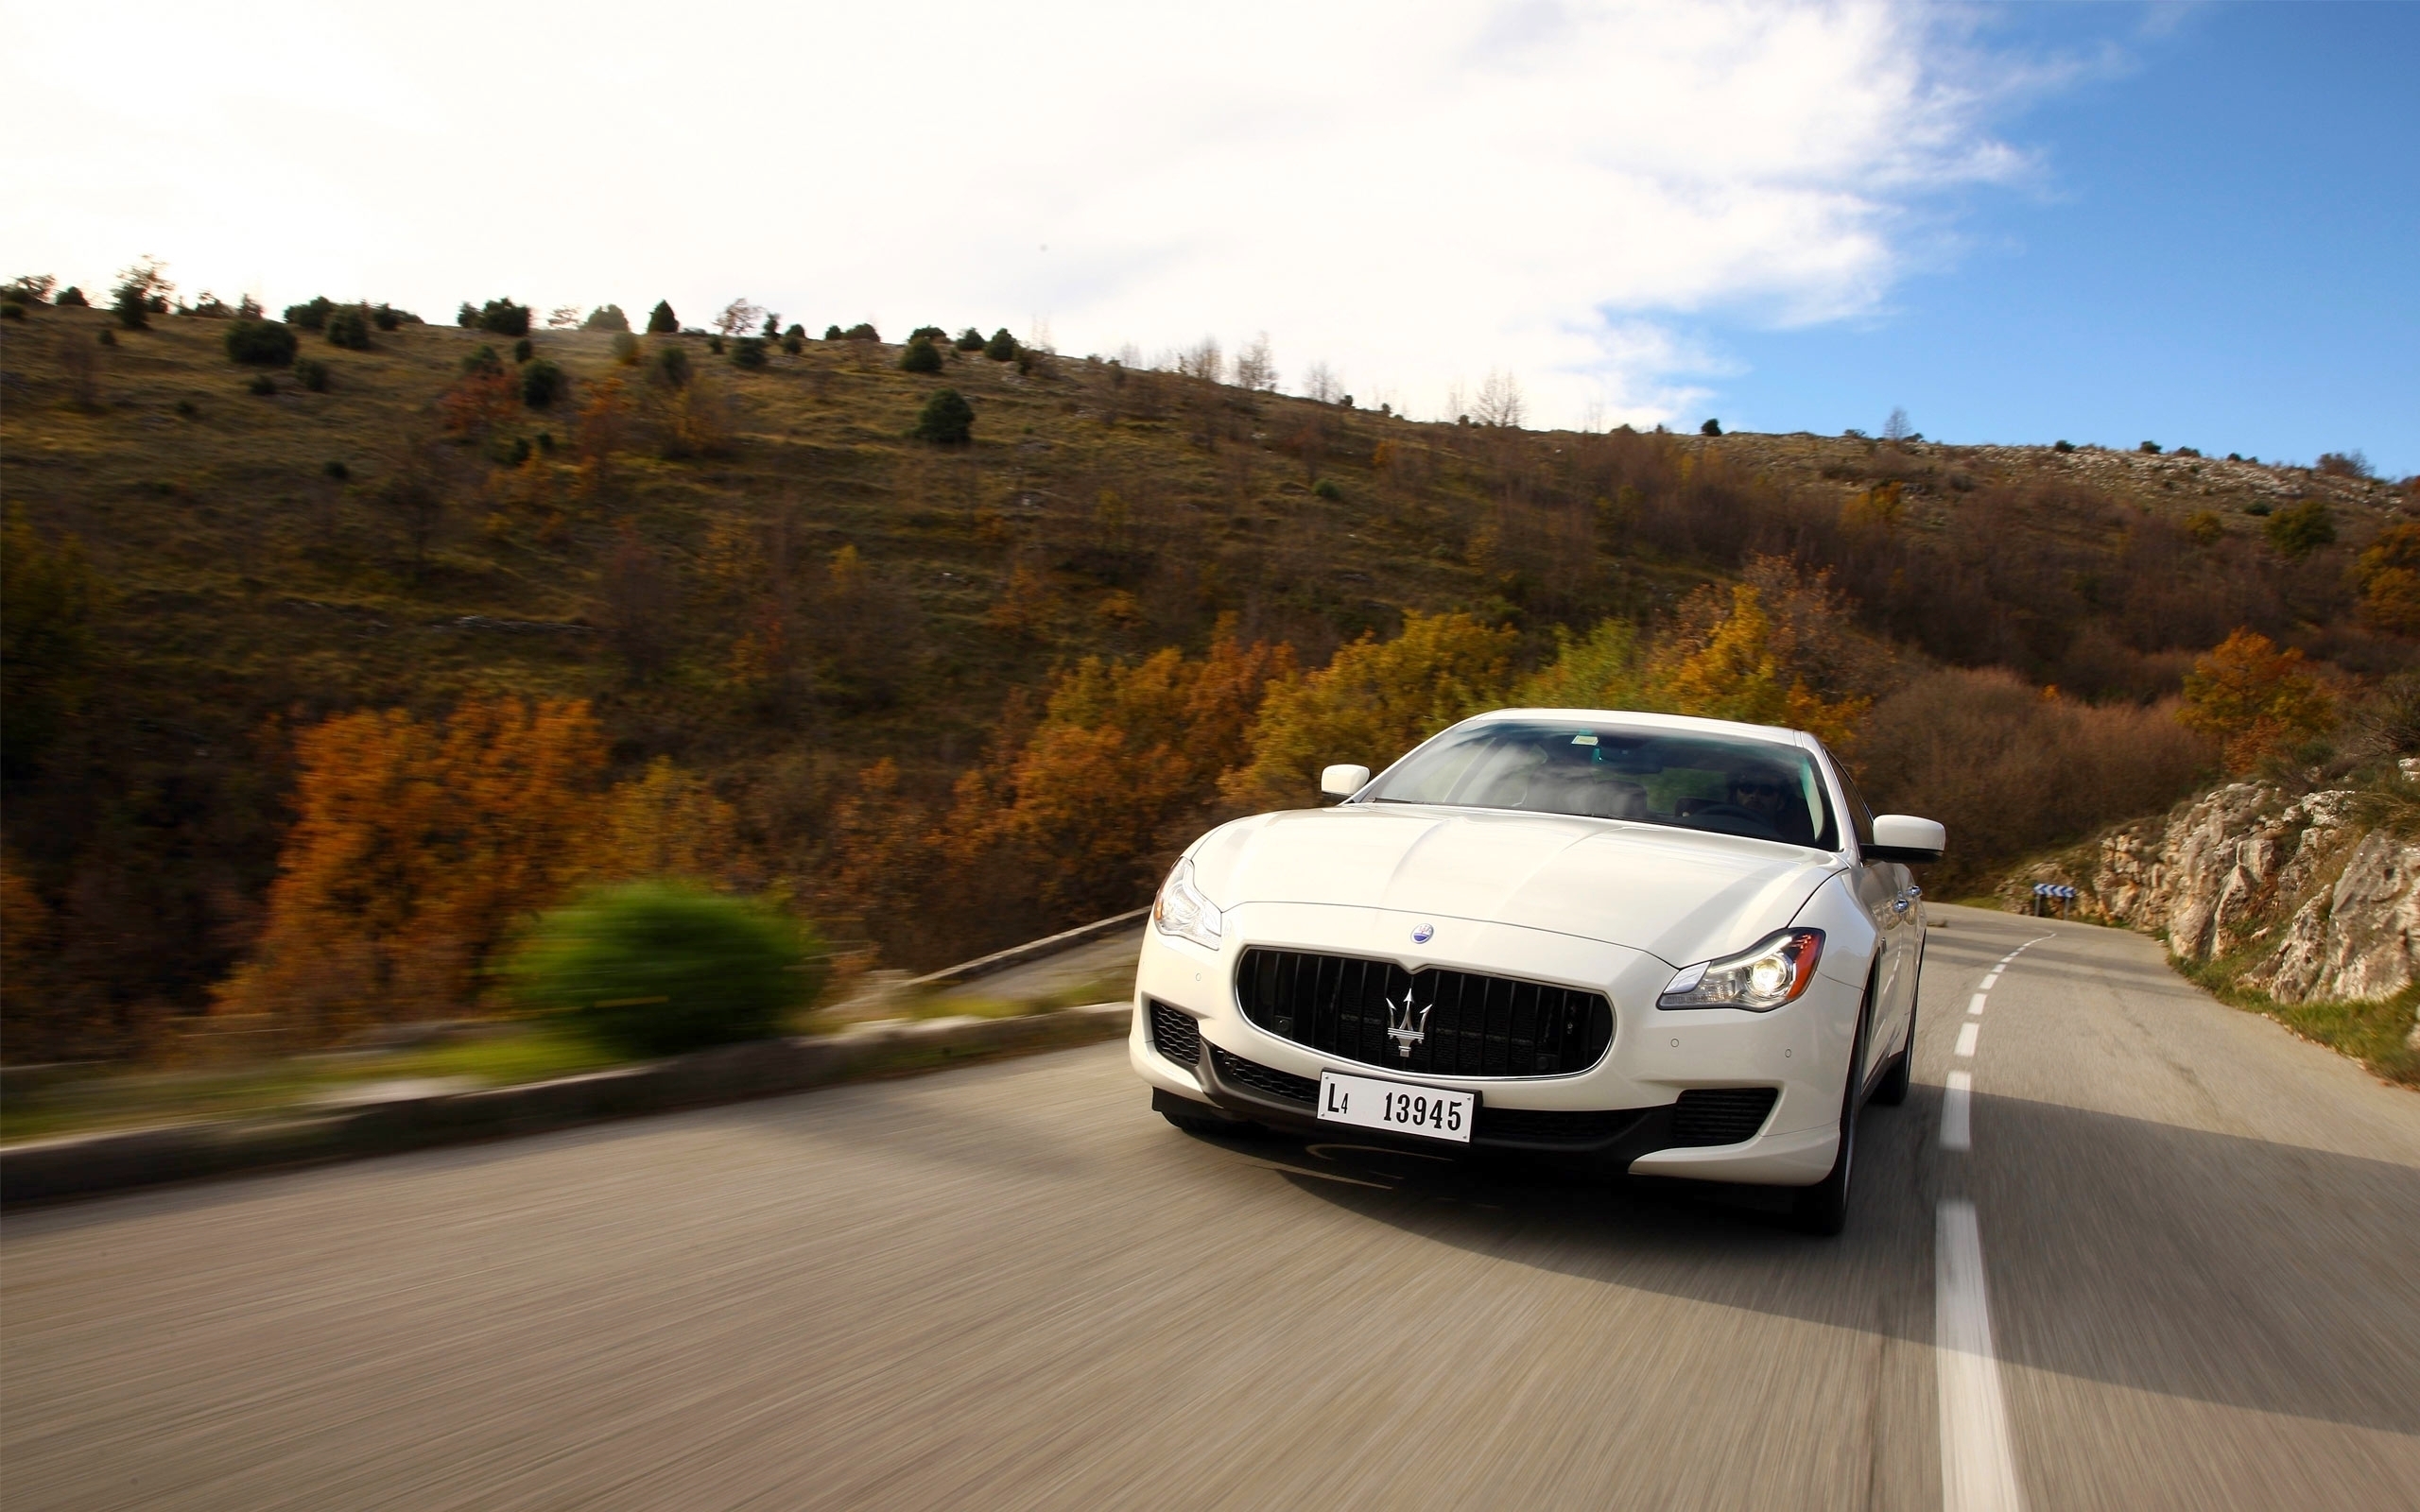 White Maserati Quattroporte  for 2560 x 1600 widescreen resolution